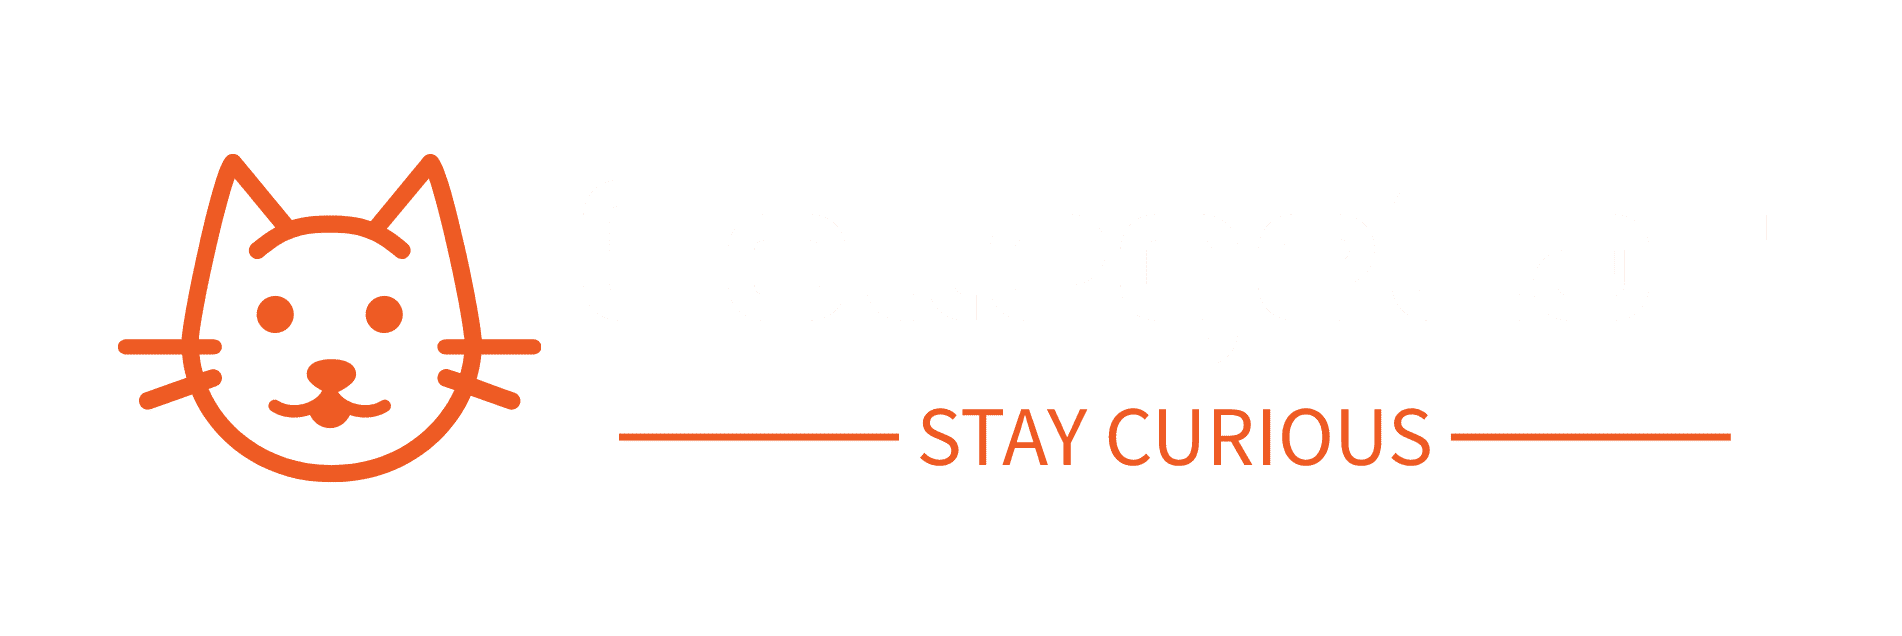 College-Cat logo